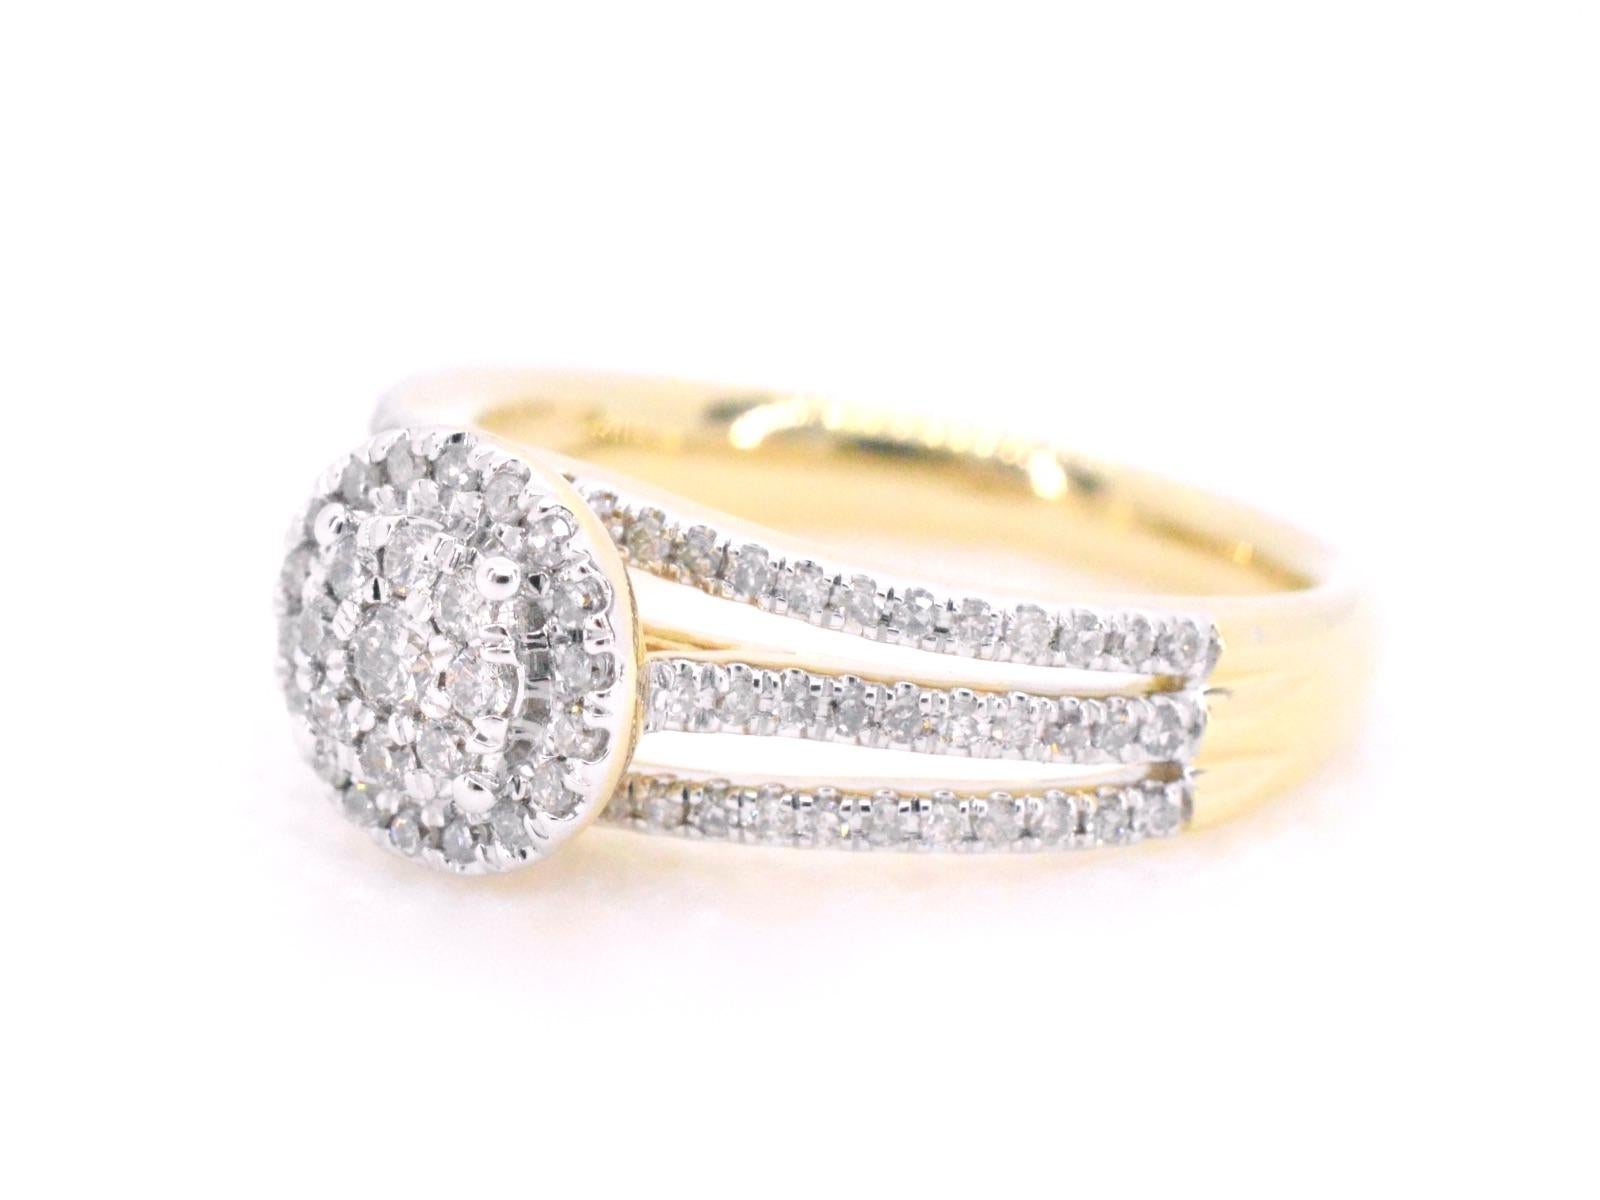 Cette exquise bague entourage en or présente une étonnante combinaison de diamants de taille brillante et ronde. Les diamants sont disposés dans un magnifique entourage, créant un spectacle époustouflant d'éclat et de feu. Le bracelet en or de haute